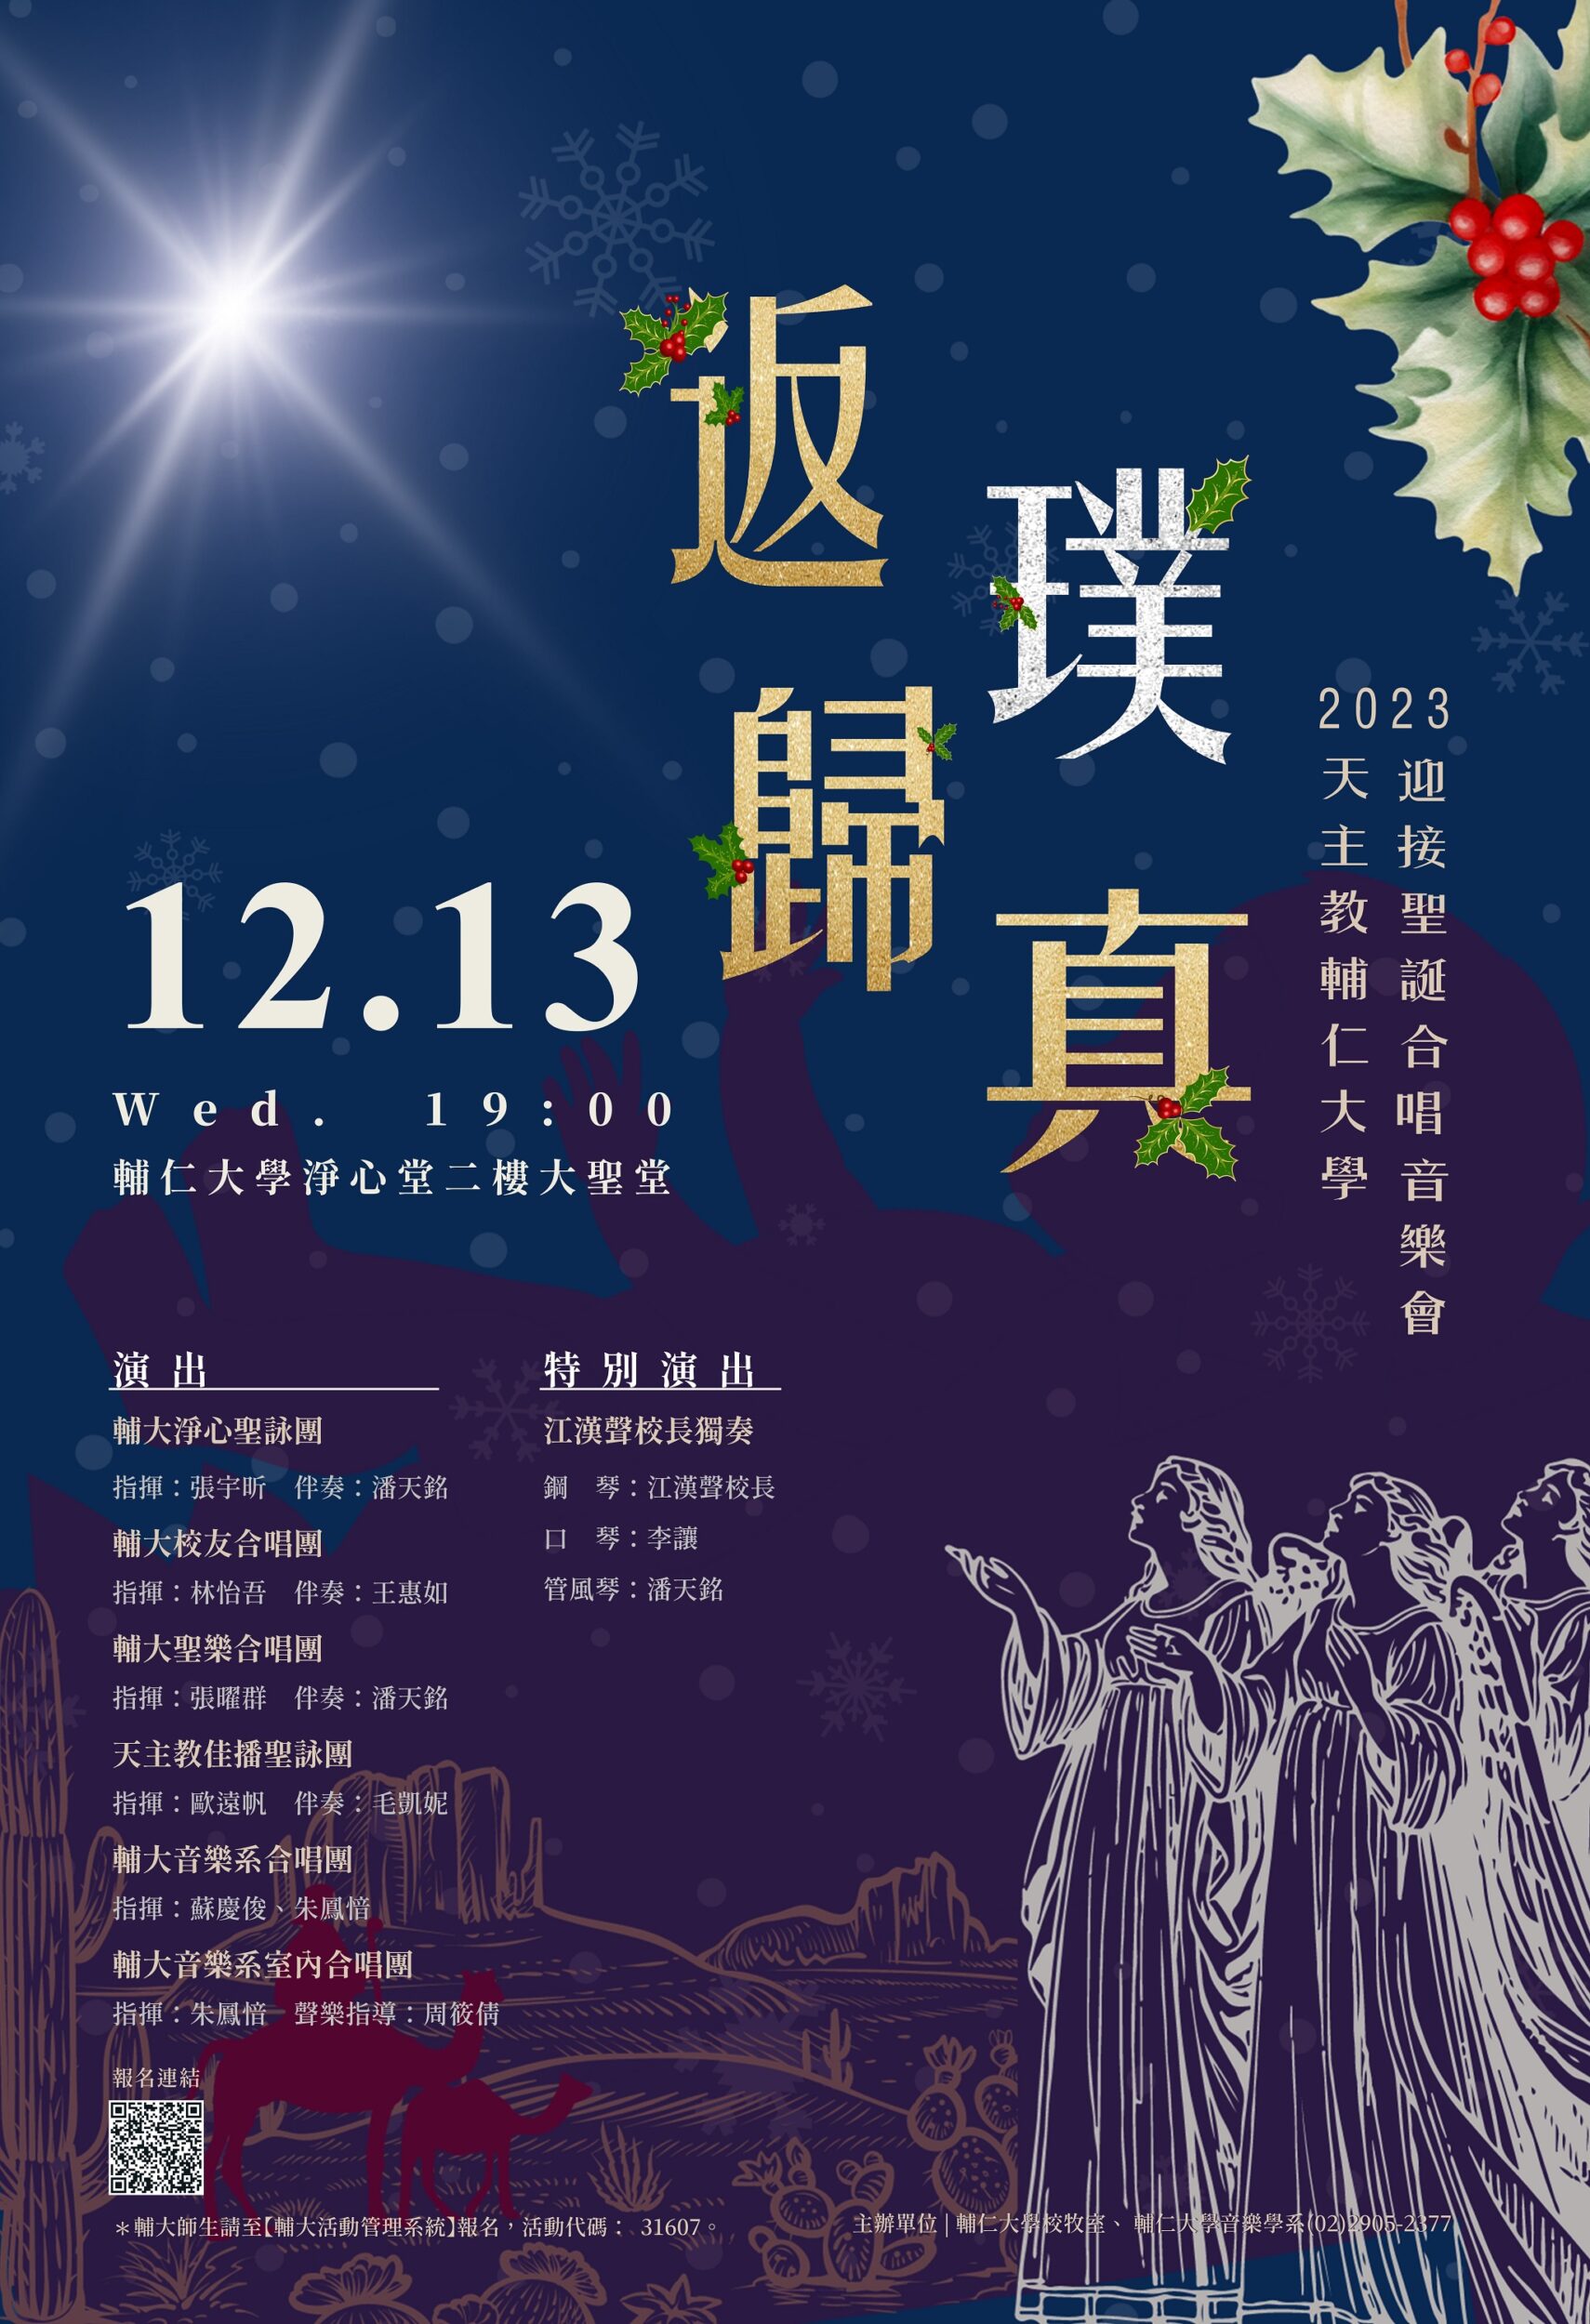 《活動》2023.12.13 2023輔仁大學迎接聖誕合唱音樂會「反璞歸真」